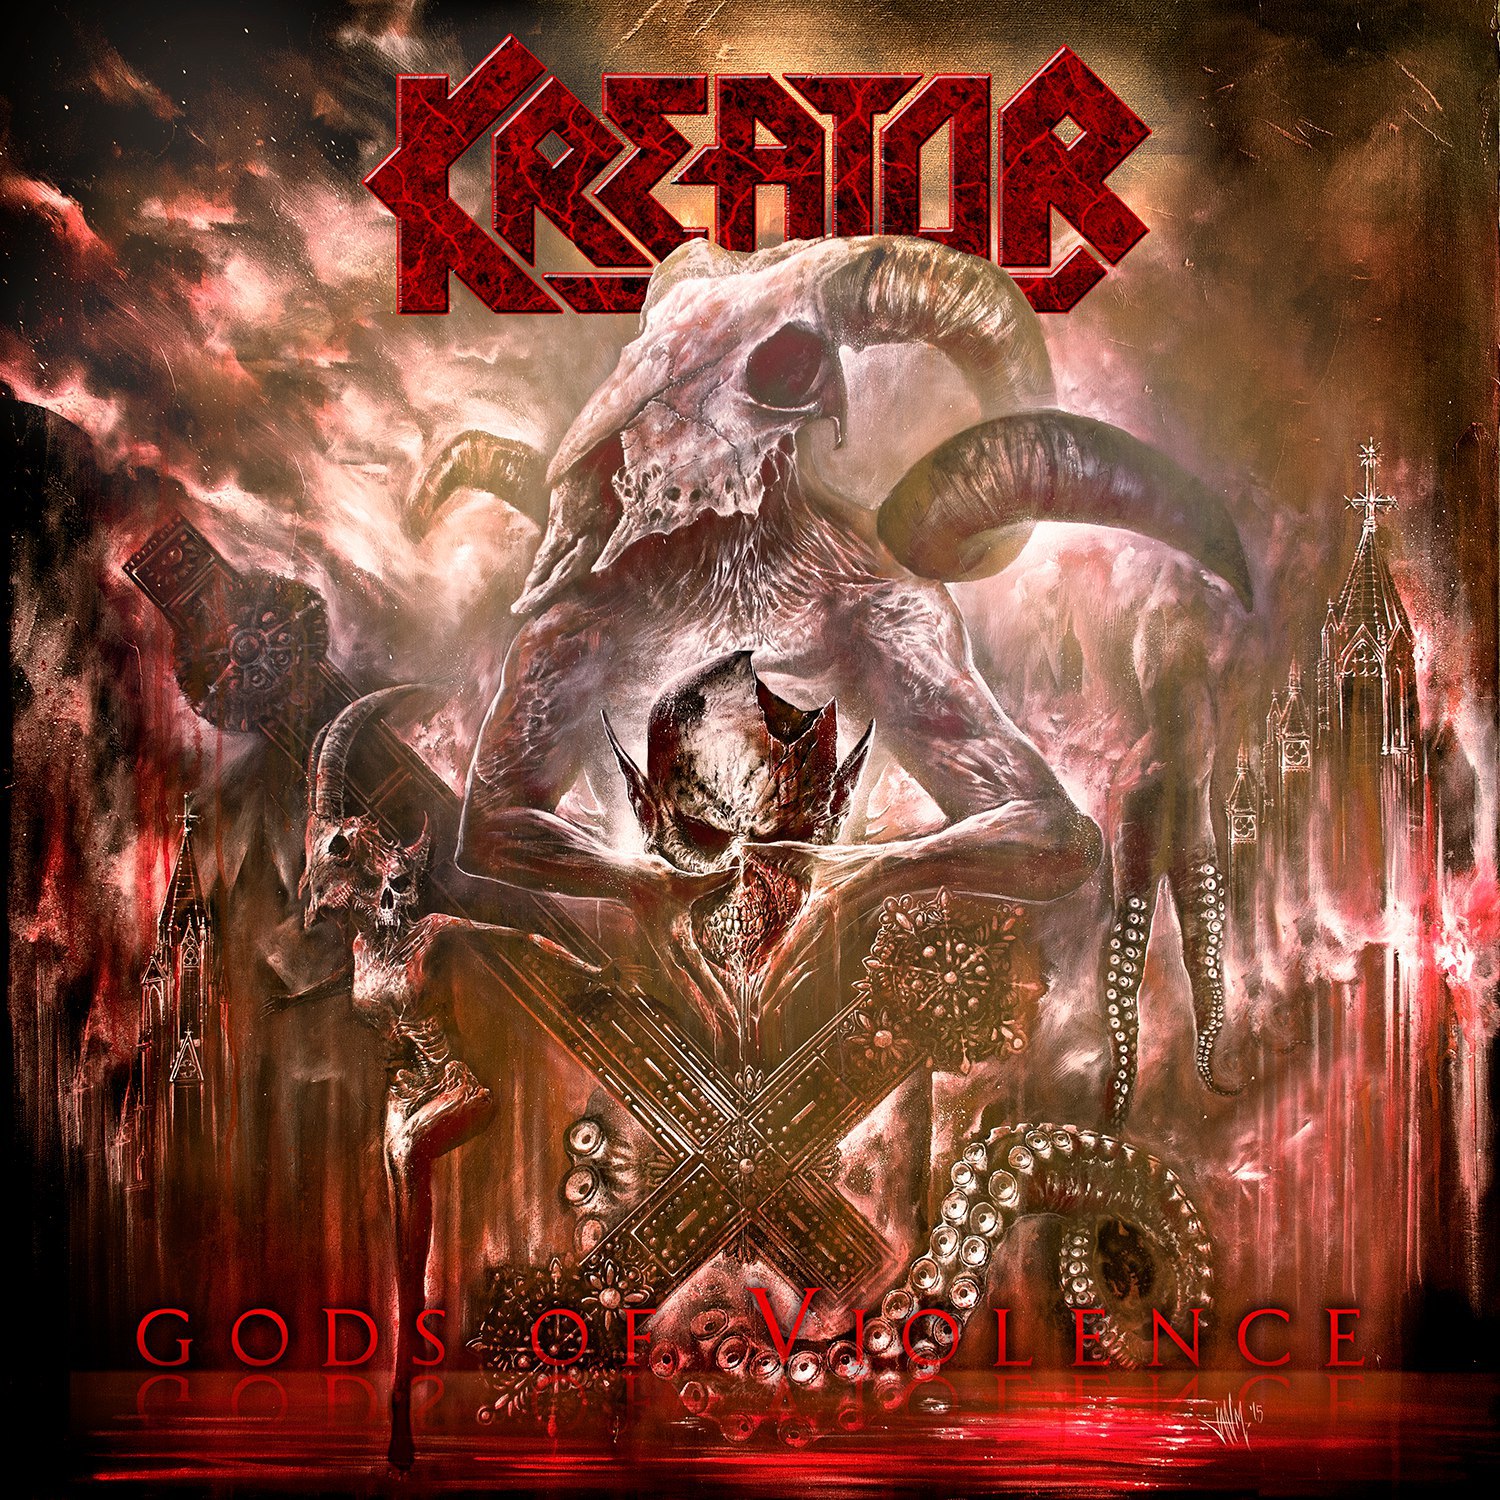 1. Kreator: Gods of Violence<br /><br />A német thrash metal-klasszisok nagyot húztak ezzel a lemezzel. A szövegvilág a tőlük már megszokott maradt, viszont zeneileg sokkal dallamosabb és fogyaszthatóbb anyag született, ami minden bizonnyal az elmúlt évtized legjobb és legkomplexebb Kreator-albuma. Tíz, minden tekintetben tökéletes, egytől egyig fogós dal alkotja az év - szerintem - legjobb külföldi metalalbumát, ami méltán helyezhető a legnagyobb klasszikusaik mellé.